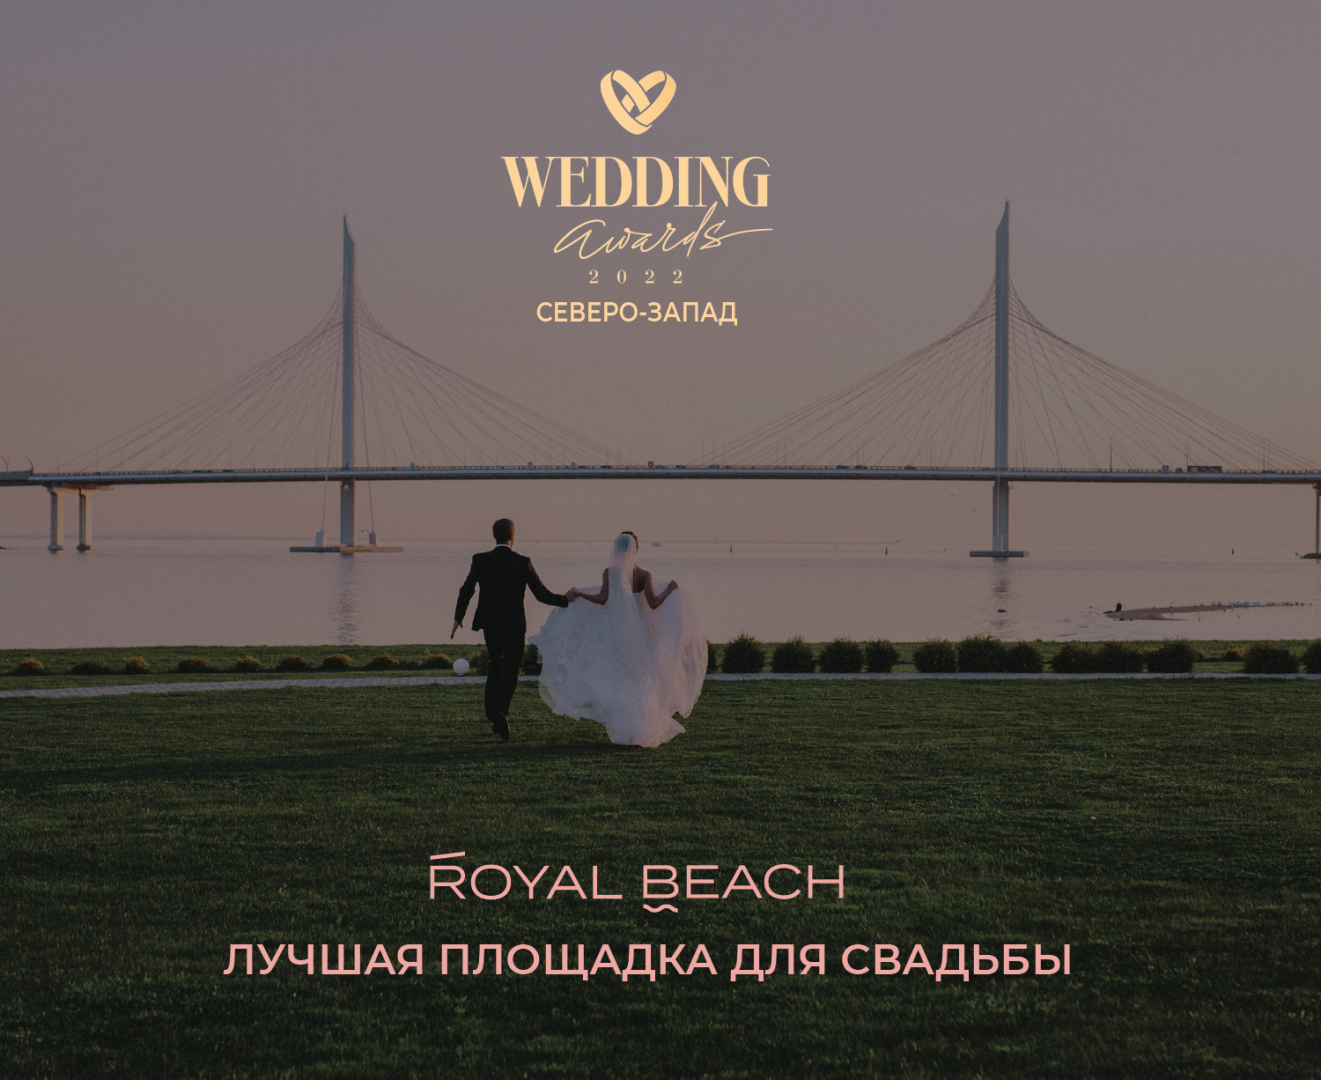 Ресторан Royal Beach — лучшая площадка для свадьбы - фотография № 1